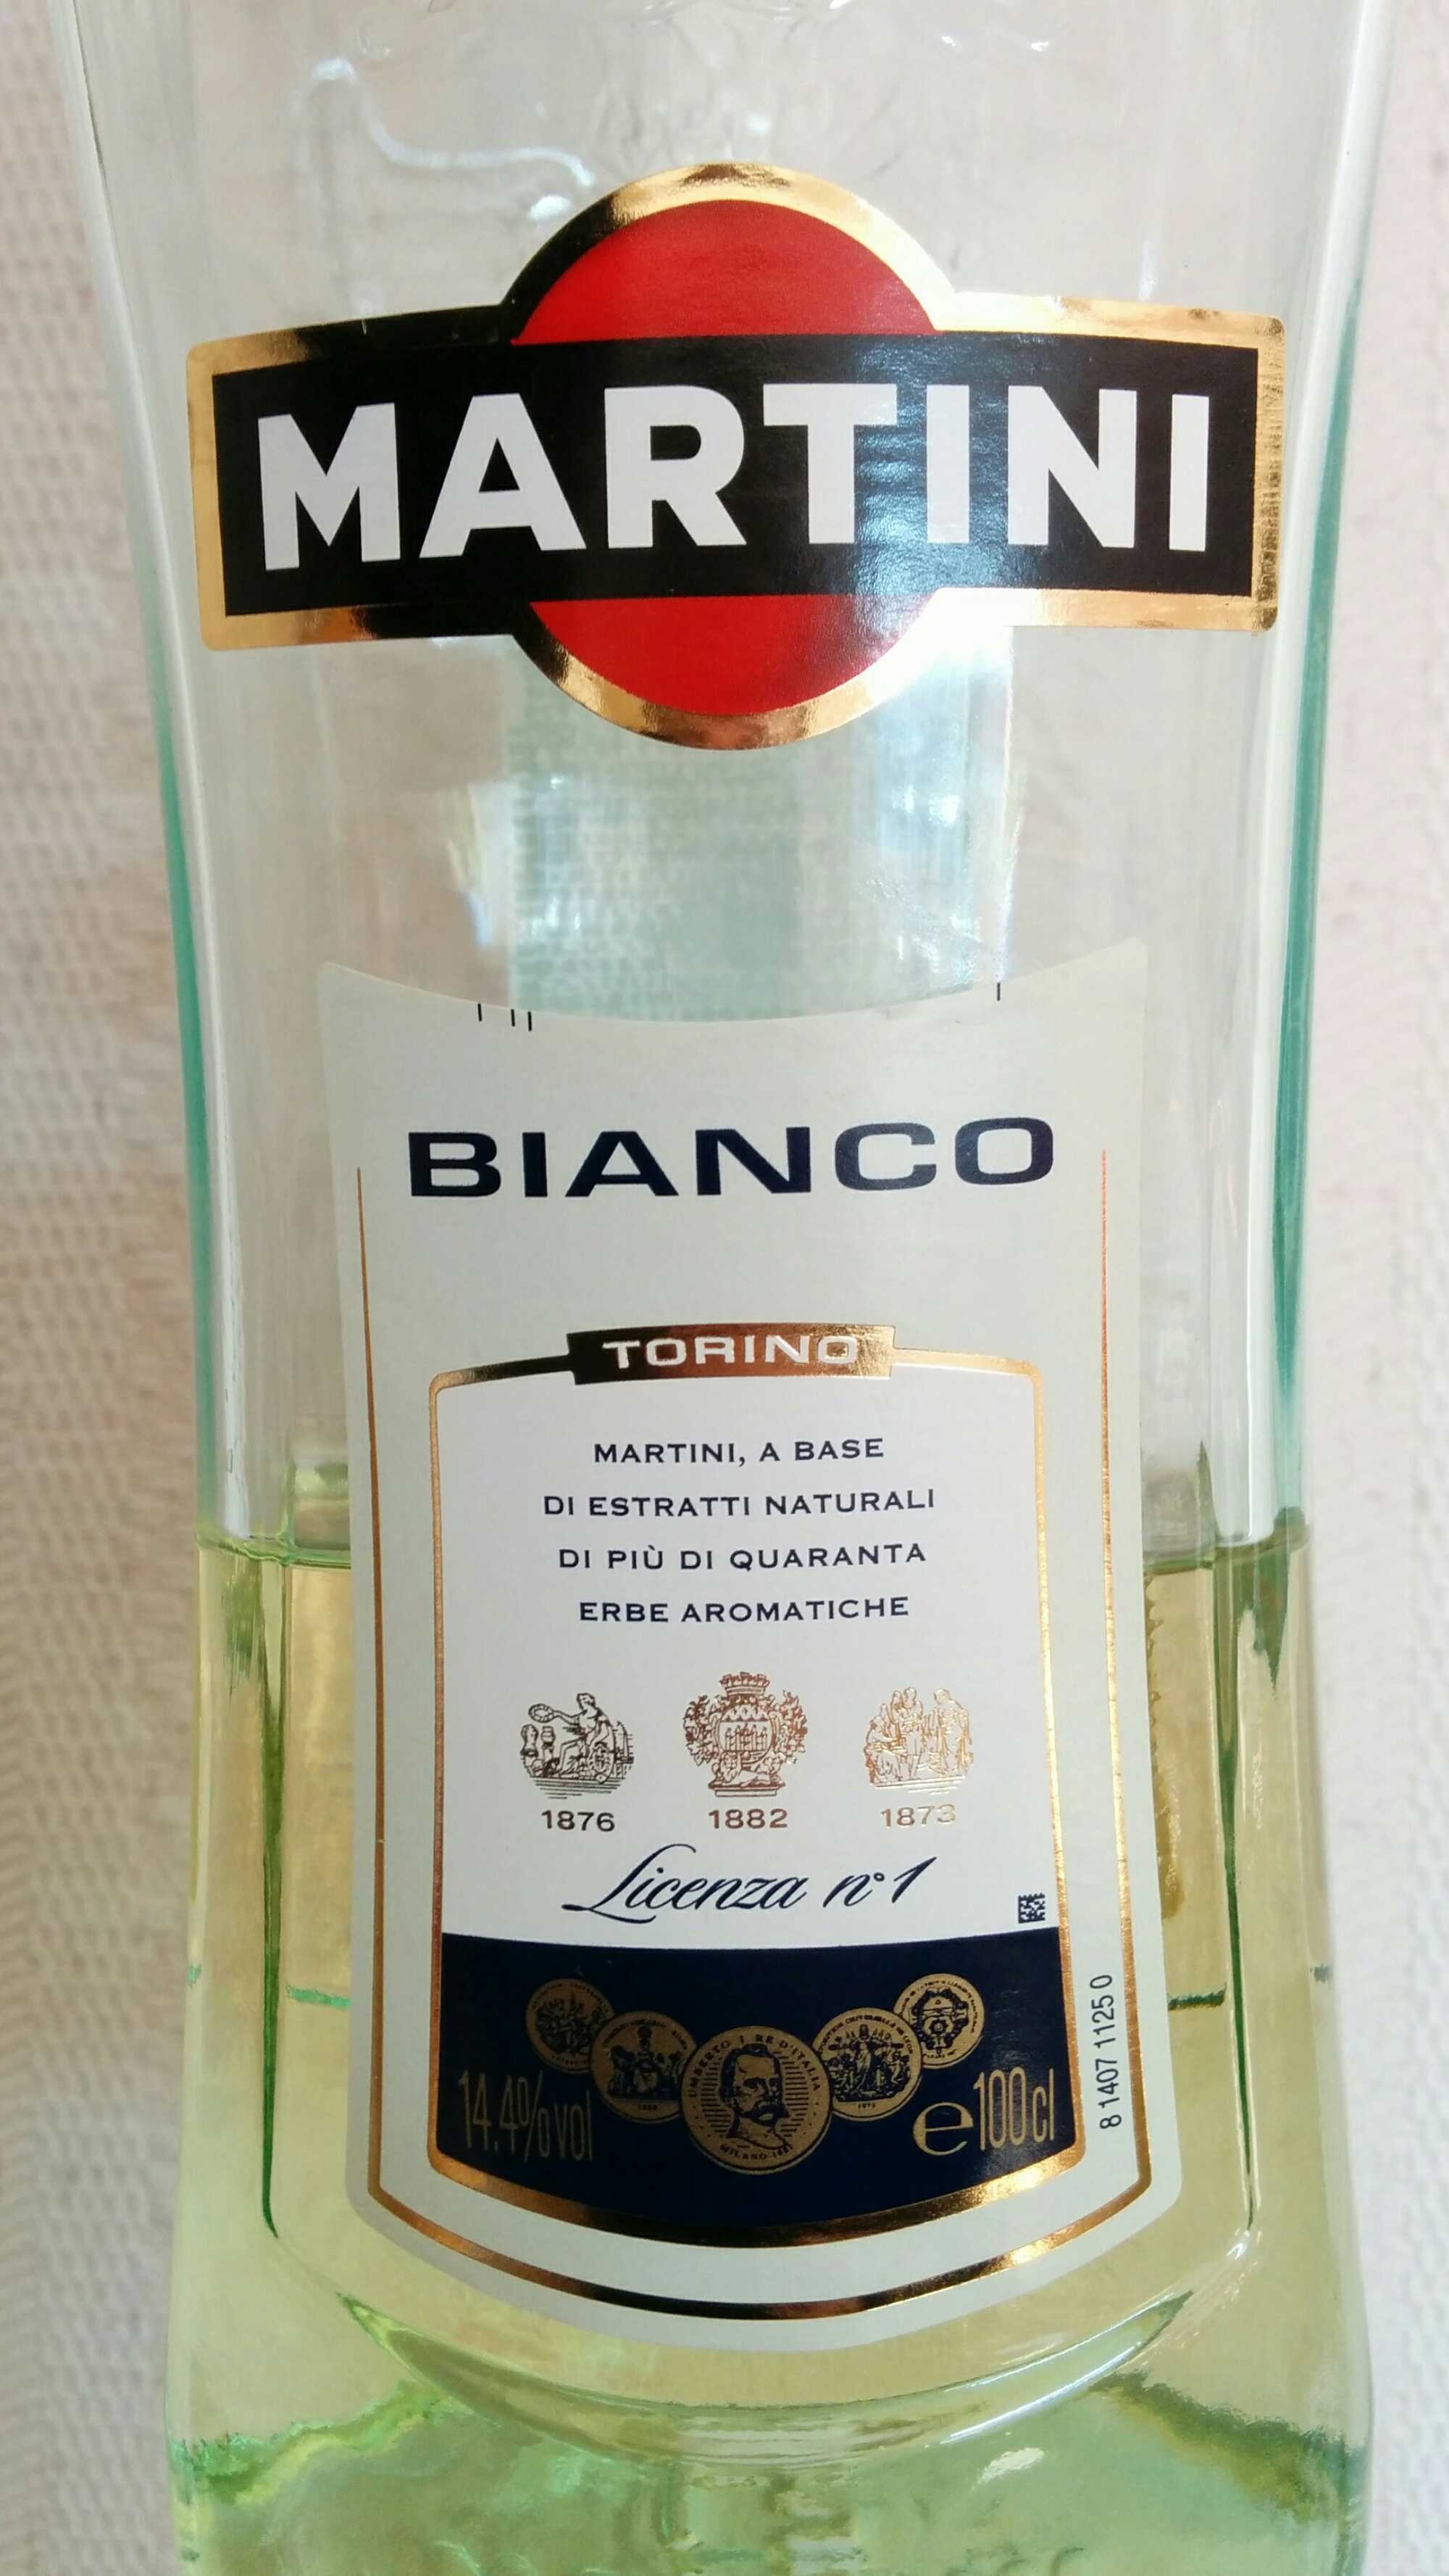 martini bianco made of - livebets365.com.